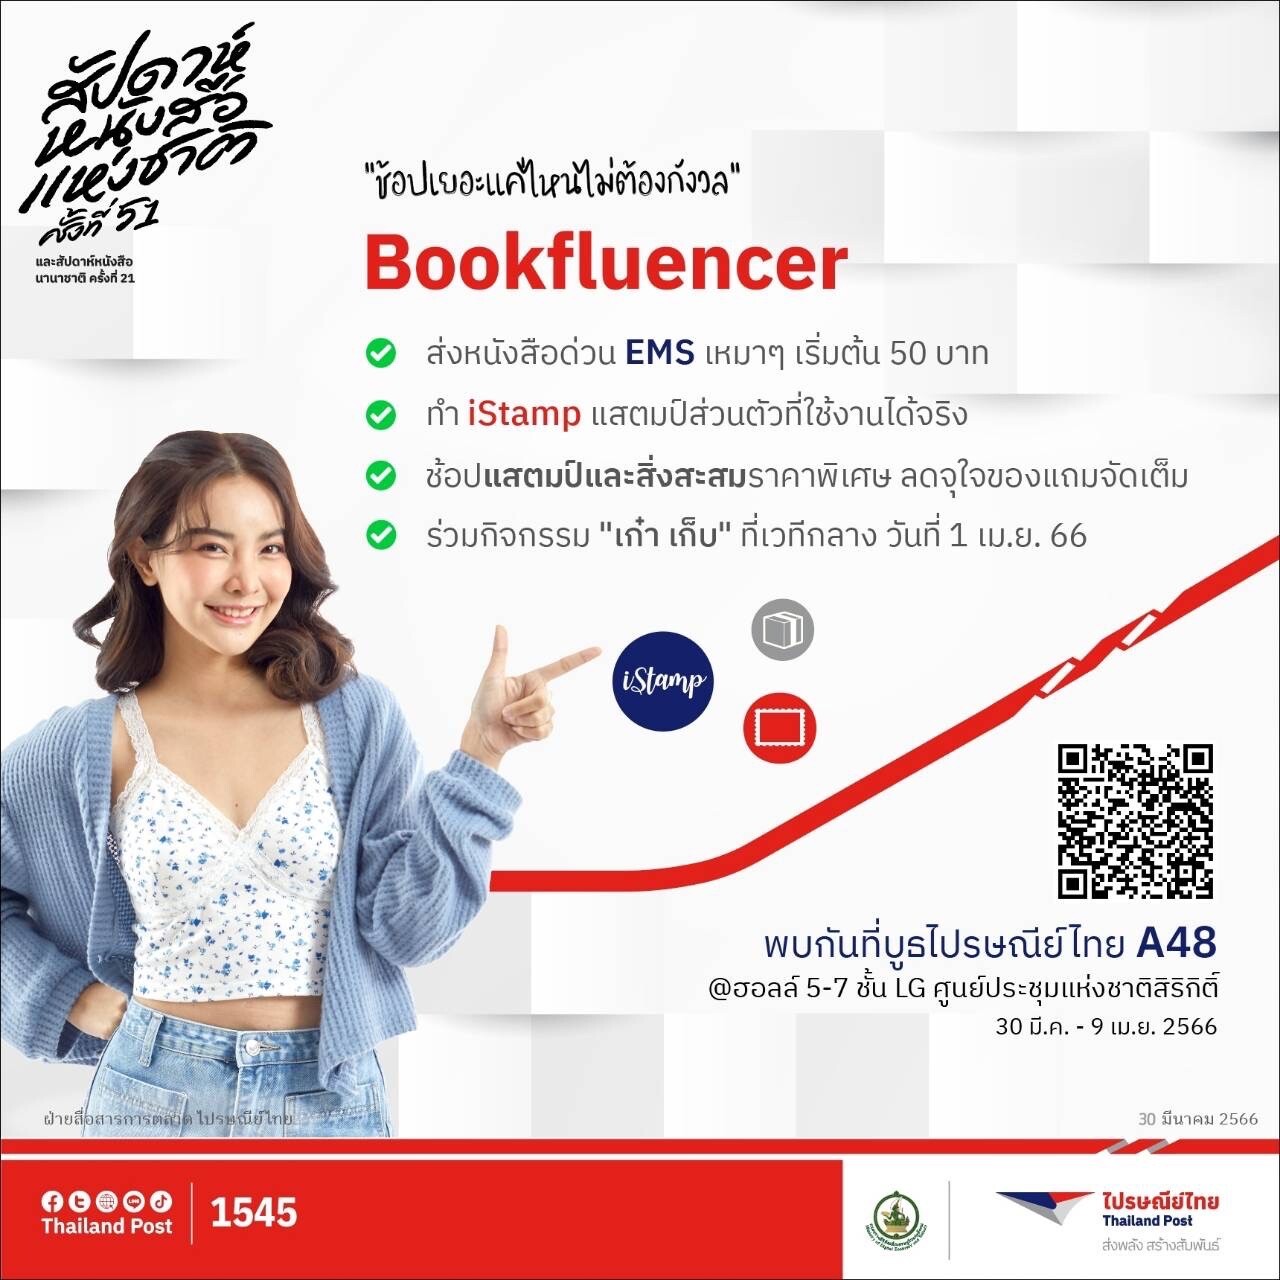 ไปรษณีย์ไทยเอาใจสาย Bookfluencer จัดหนักโปร EMS เหมาจ่ายเริ่มต้นเพียง 50 บาทในงานสัปดาห์หนังสือแห่งชาติ ครั้งที่ 51